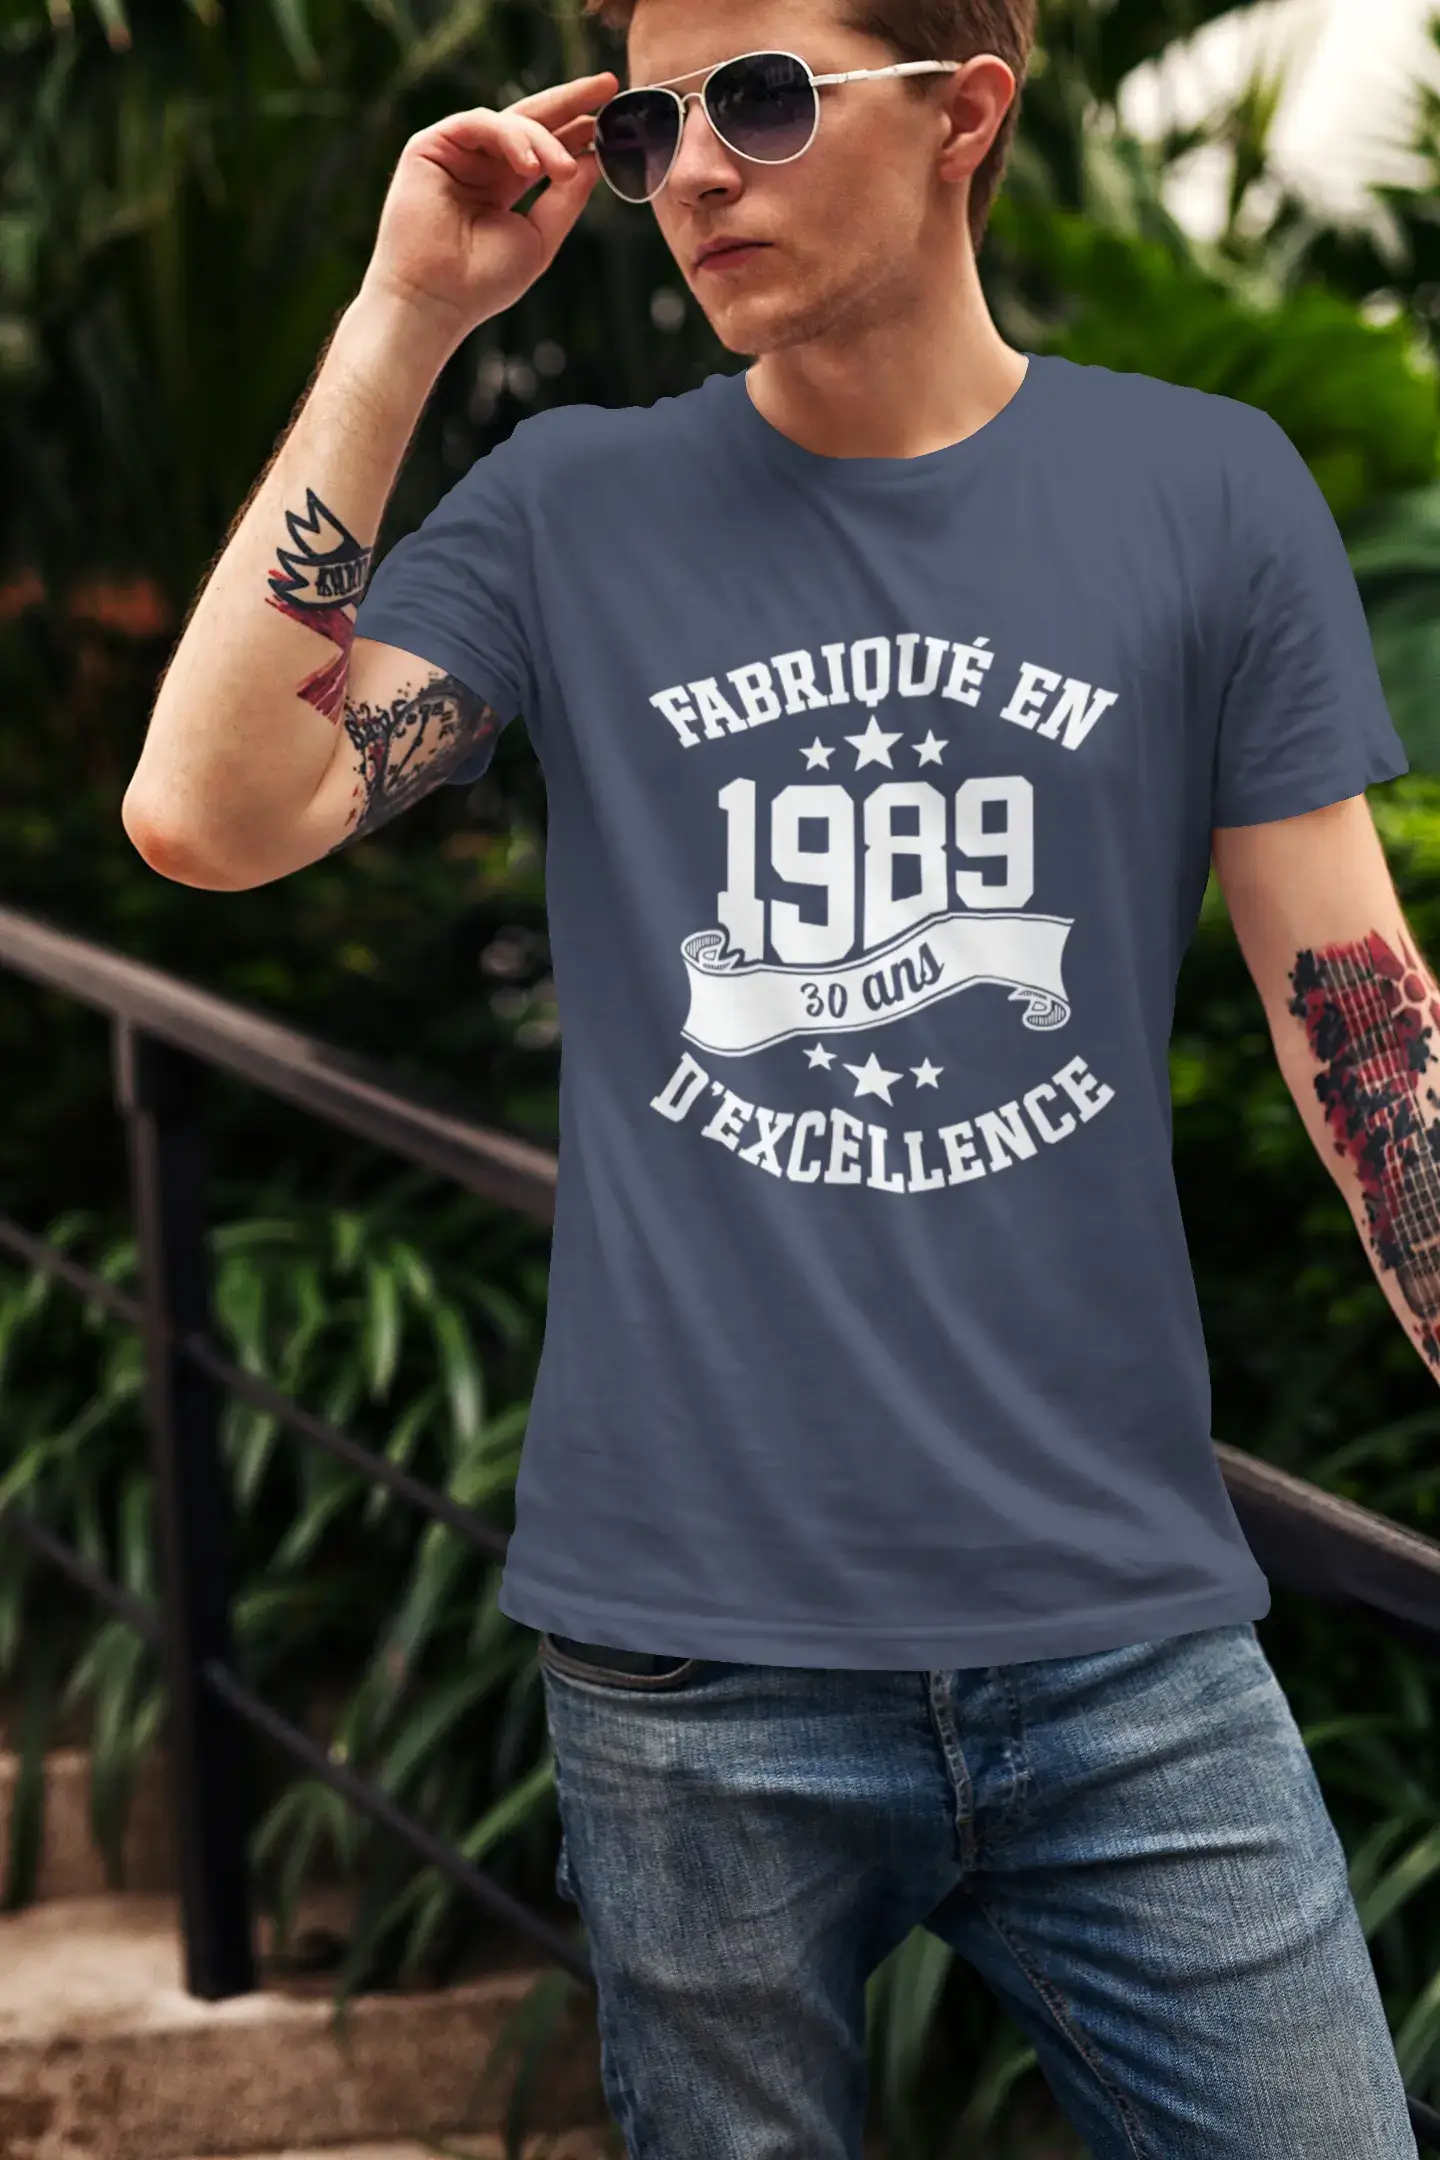 ULTRABASIC – Hergestellt im Jahr 1989, 30 Jahre alt. Geniales Unisex-T-Shirt Bordeaux